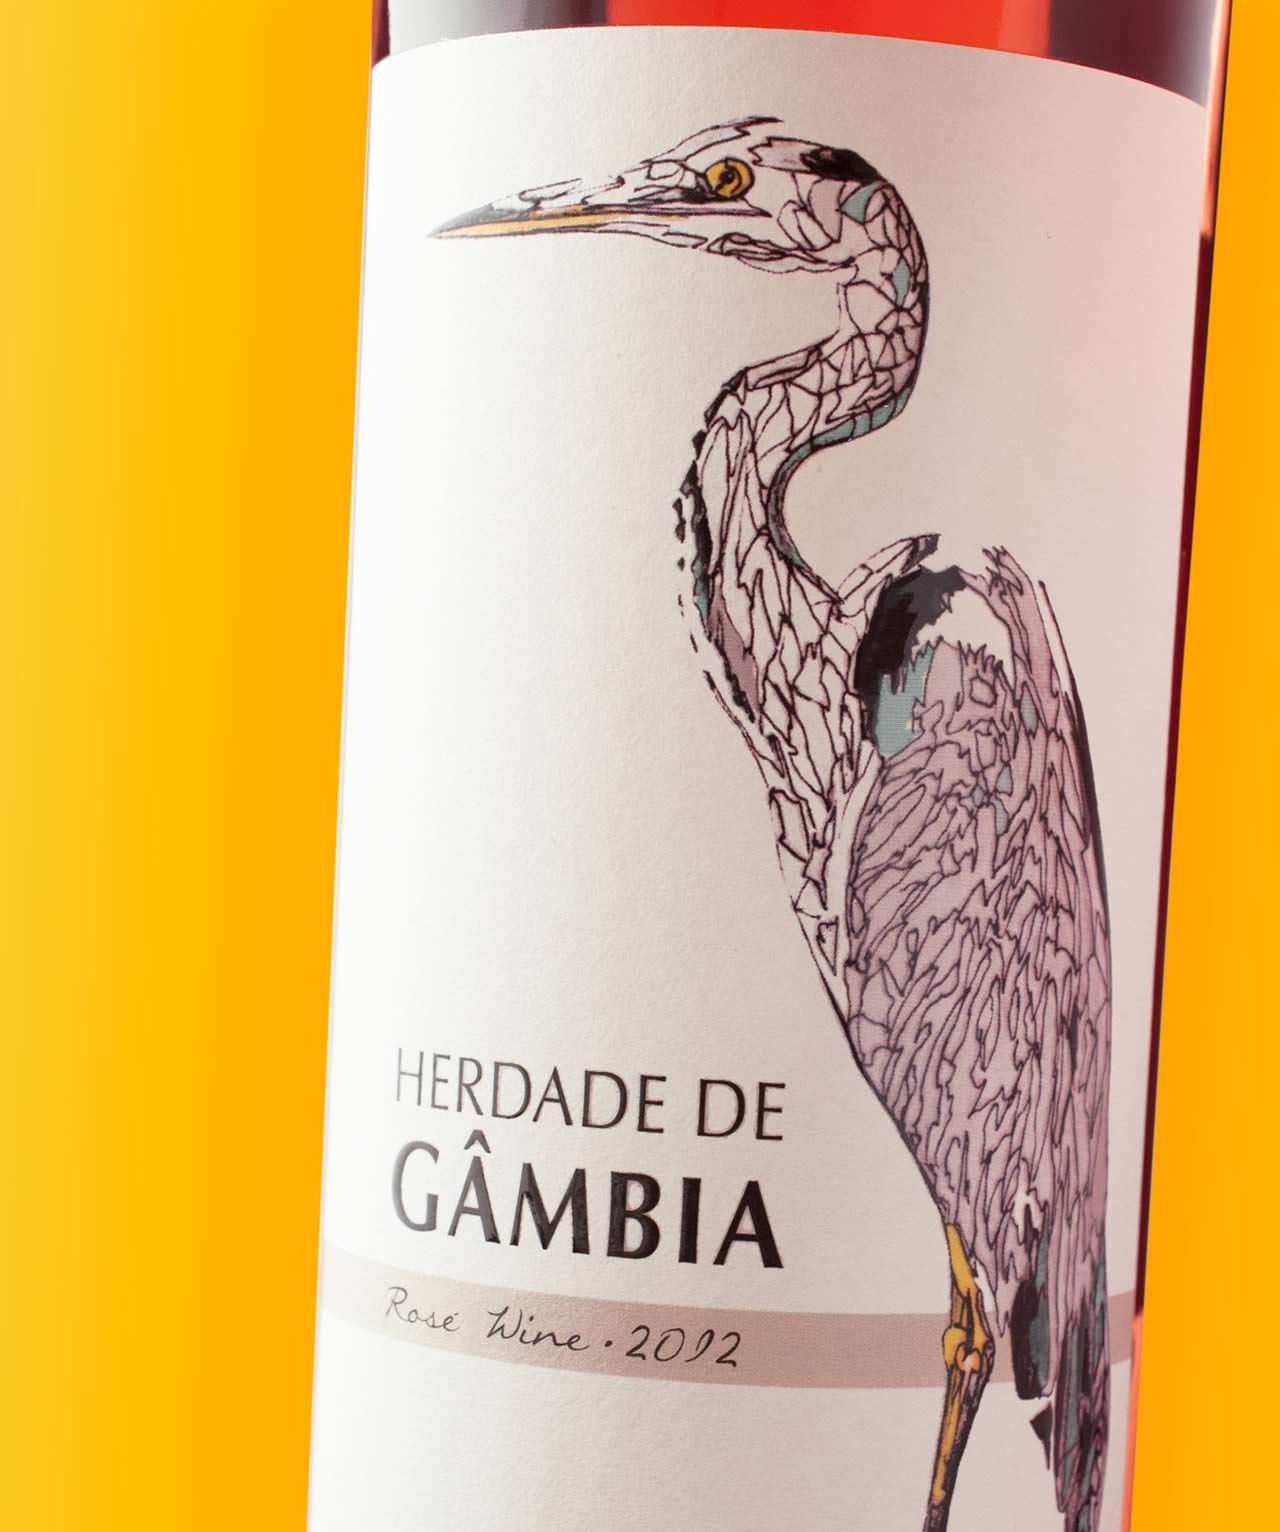 wine-label-design-gambia ritarivotti